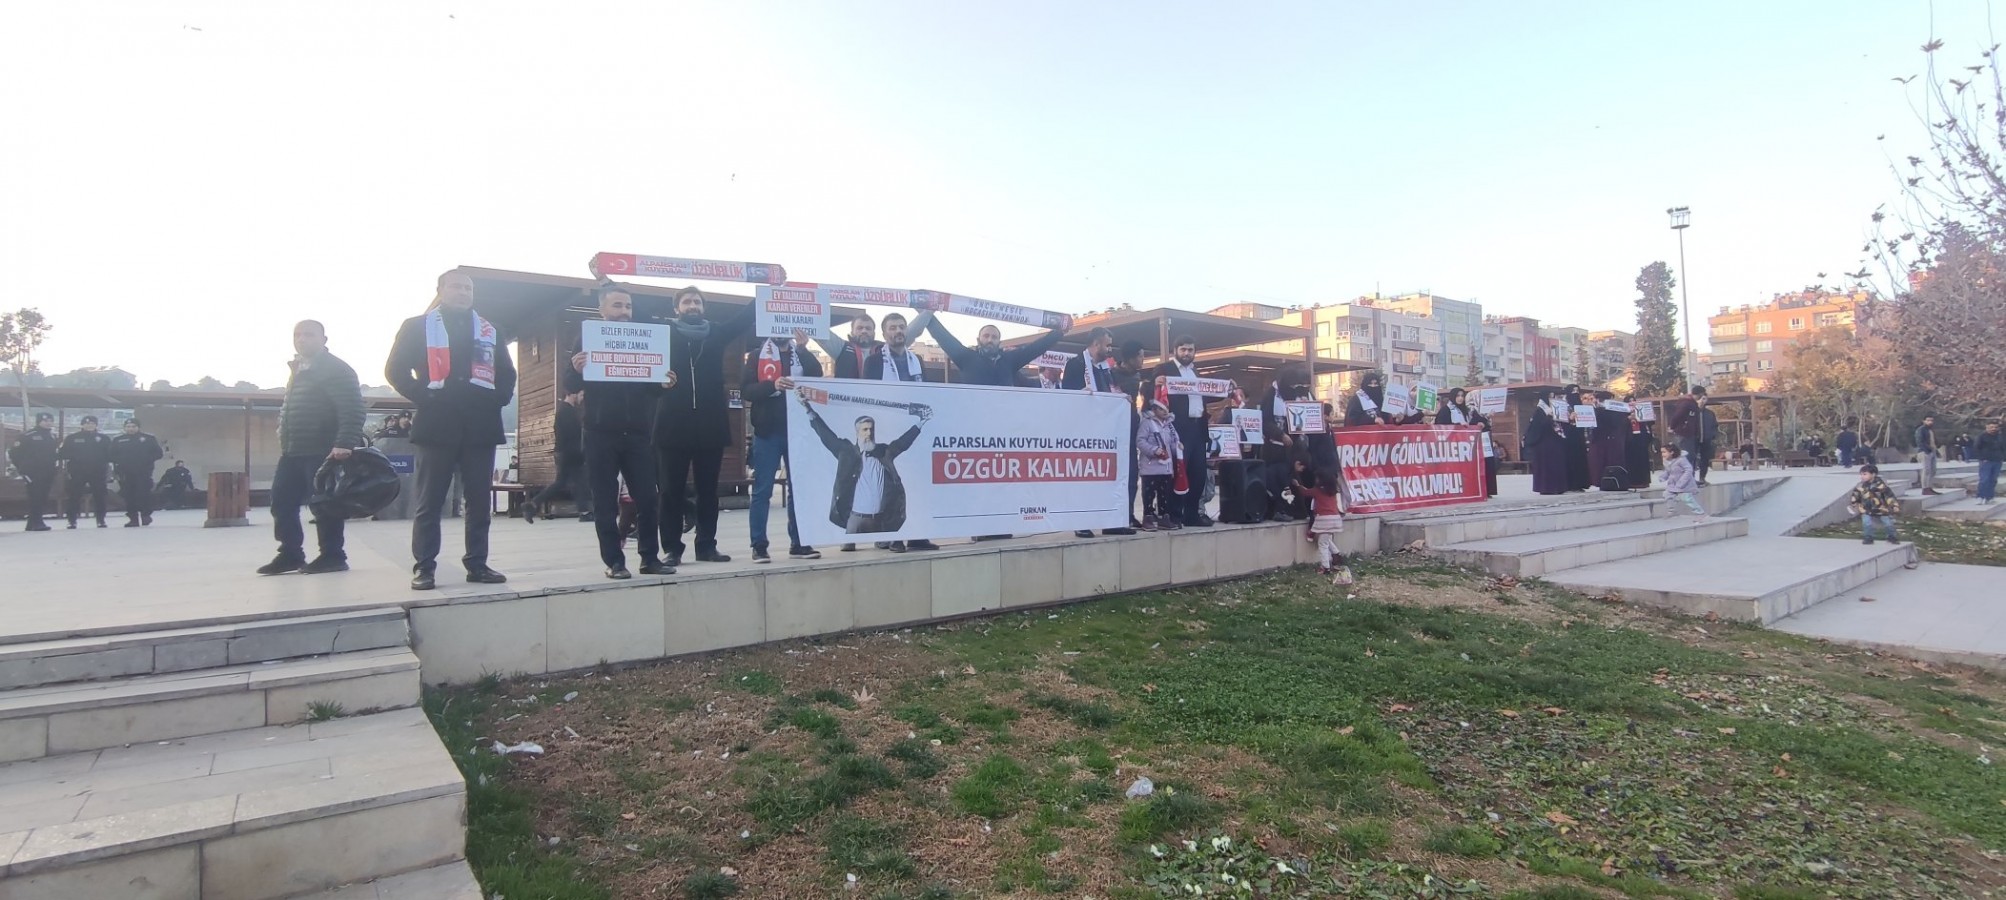 Furkan Vakfı üyeleri Urfa'da eylem yaptı!;